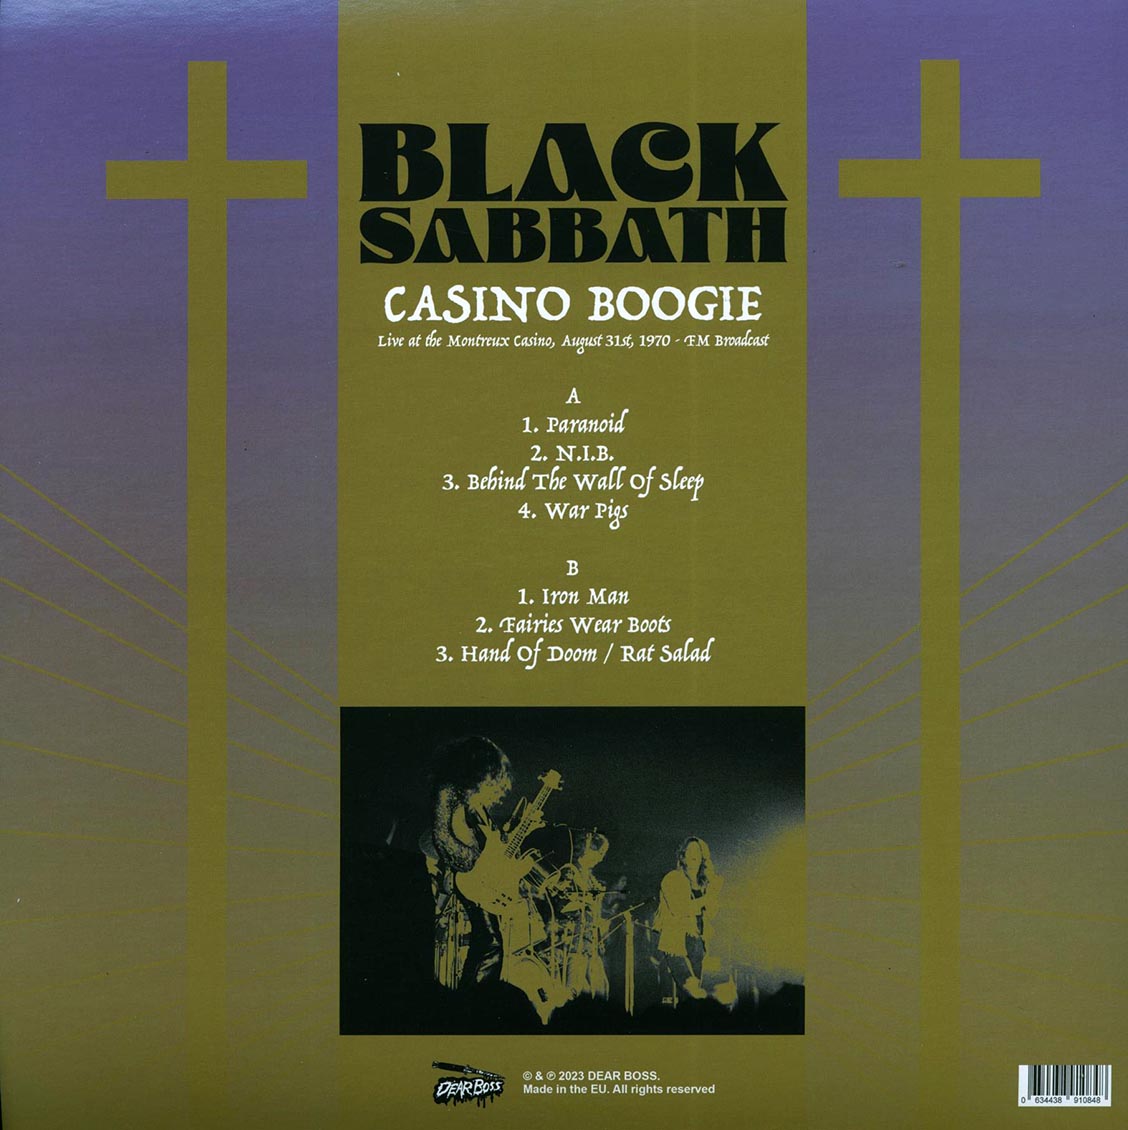 Black Sabbath - Casino Boogie: Live At The Montreux Casino, August 31st 1970 FM Broadcast (colored vinyl) - Vinyl LP, LP